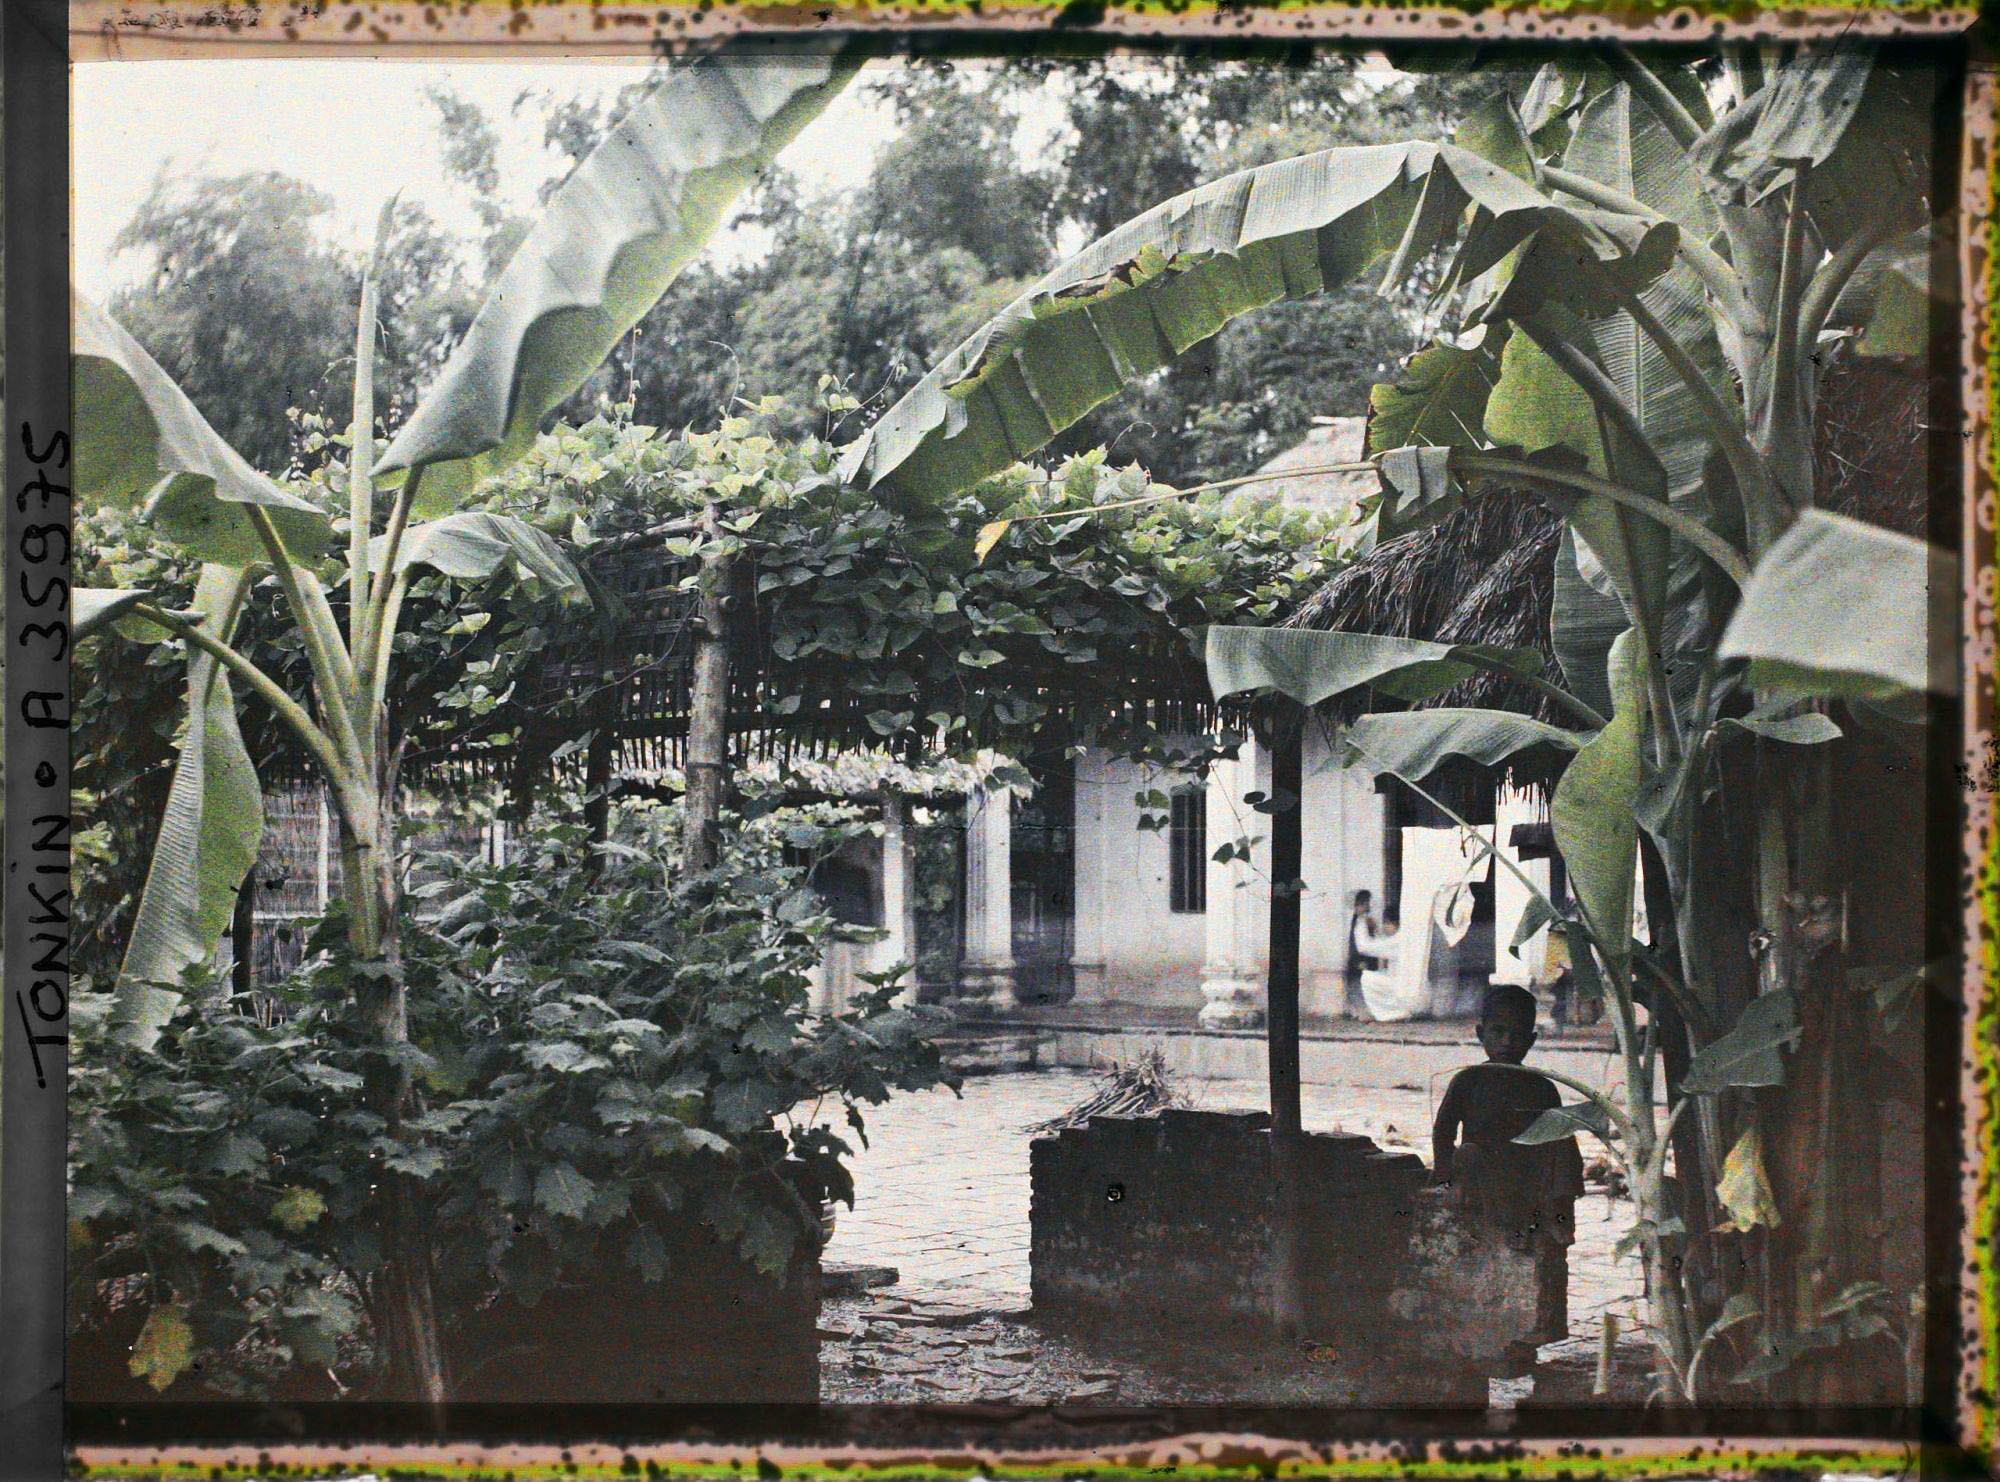 Một mảnh vườn có cây chuối và giàn trầu tại một ngôi làng miền Bắc năm 1921. Ảnh của Léon Busy.